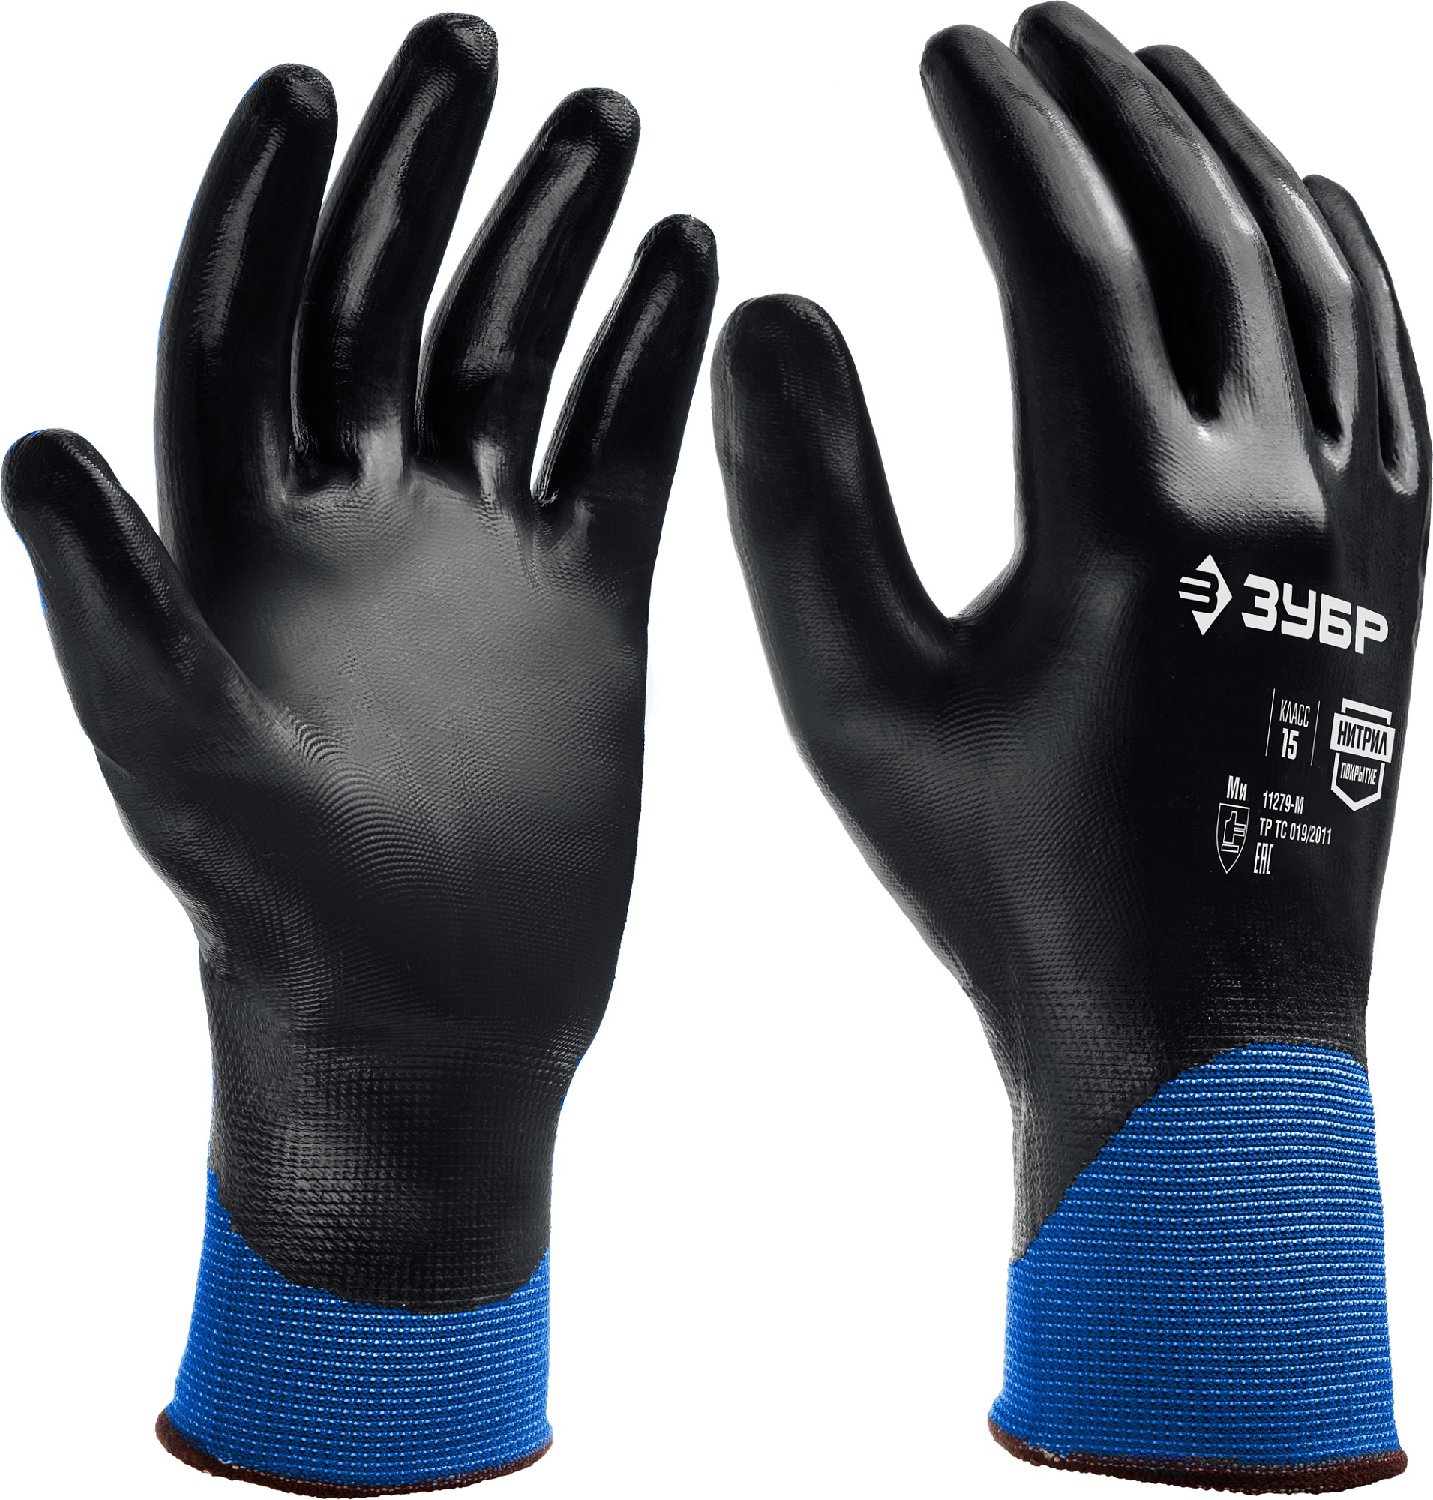 Маслобензостойкие перчатки ЗУБР Механик+ р. L полный облив тонкие (11279-L)Купить